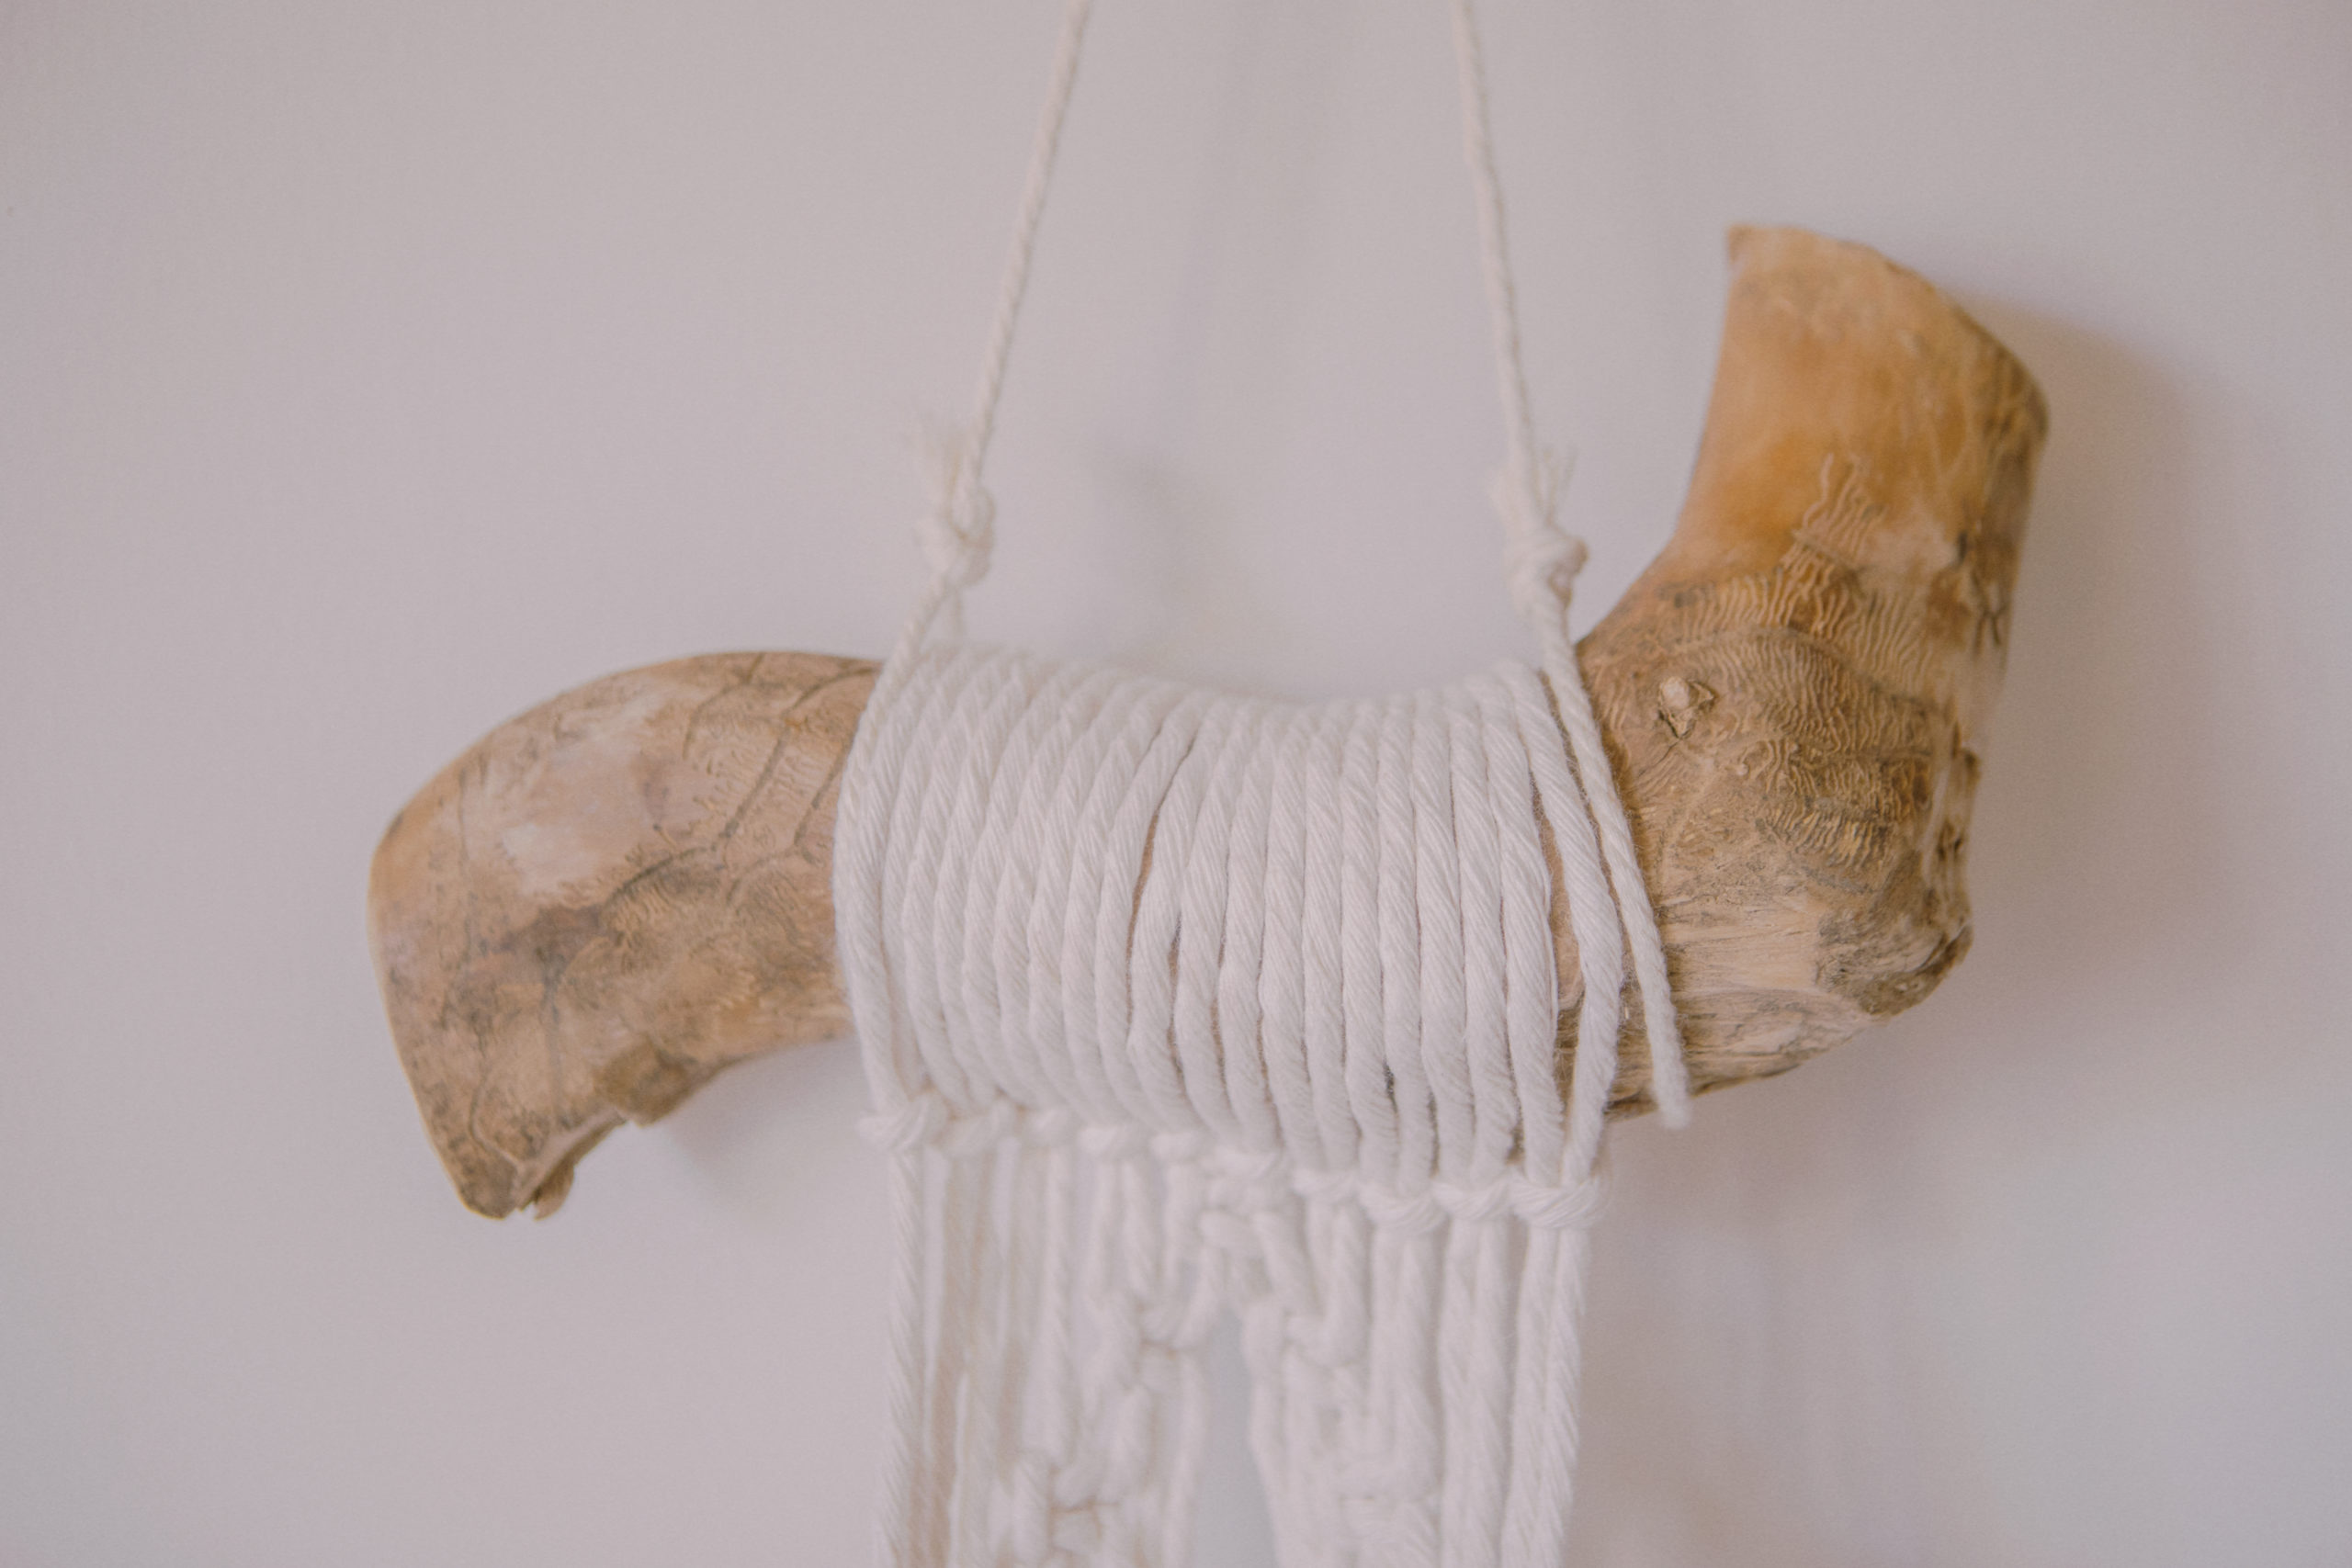 Macetero artesanal de macramé hecho con madera de la sierra de guadarrama y cuerdas de algodón ecológicas